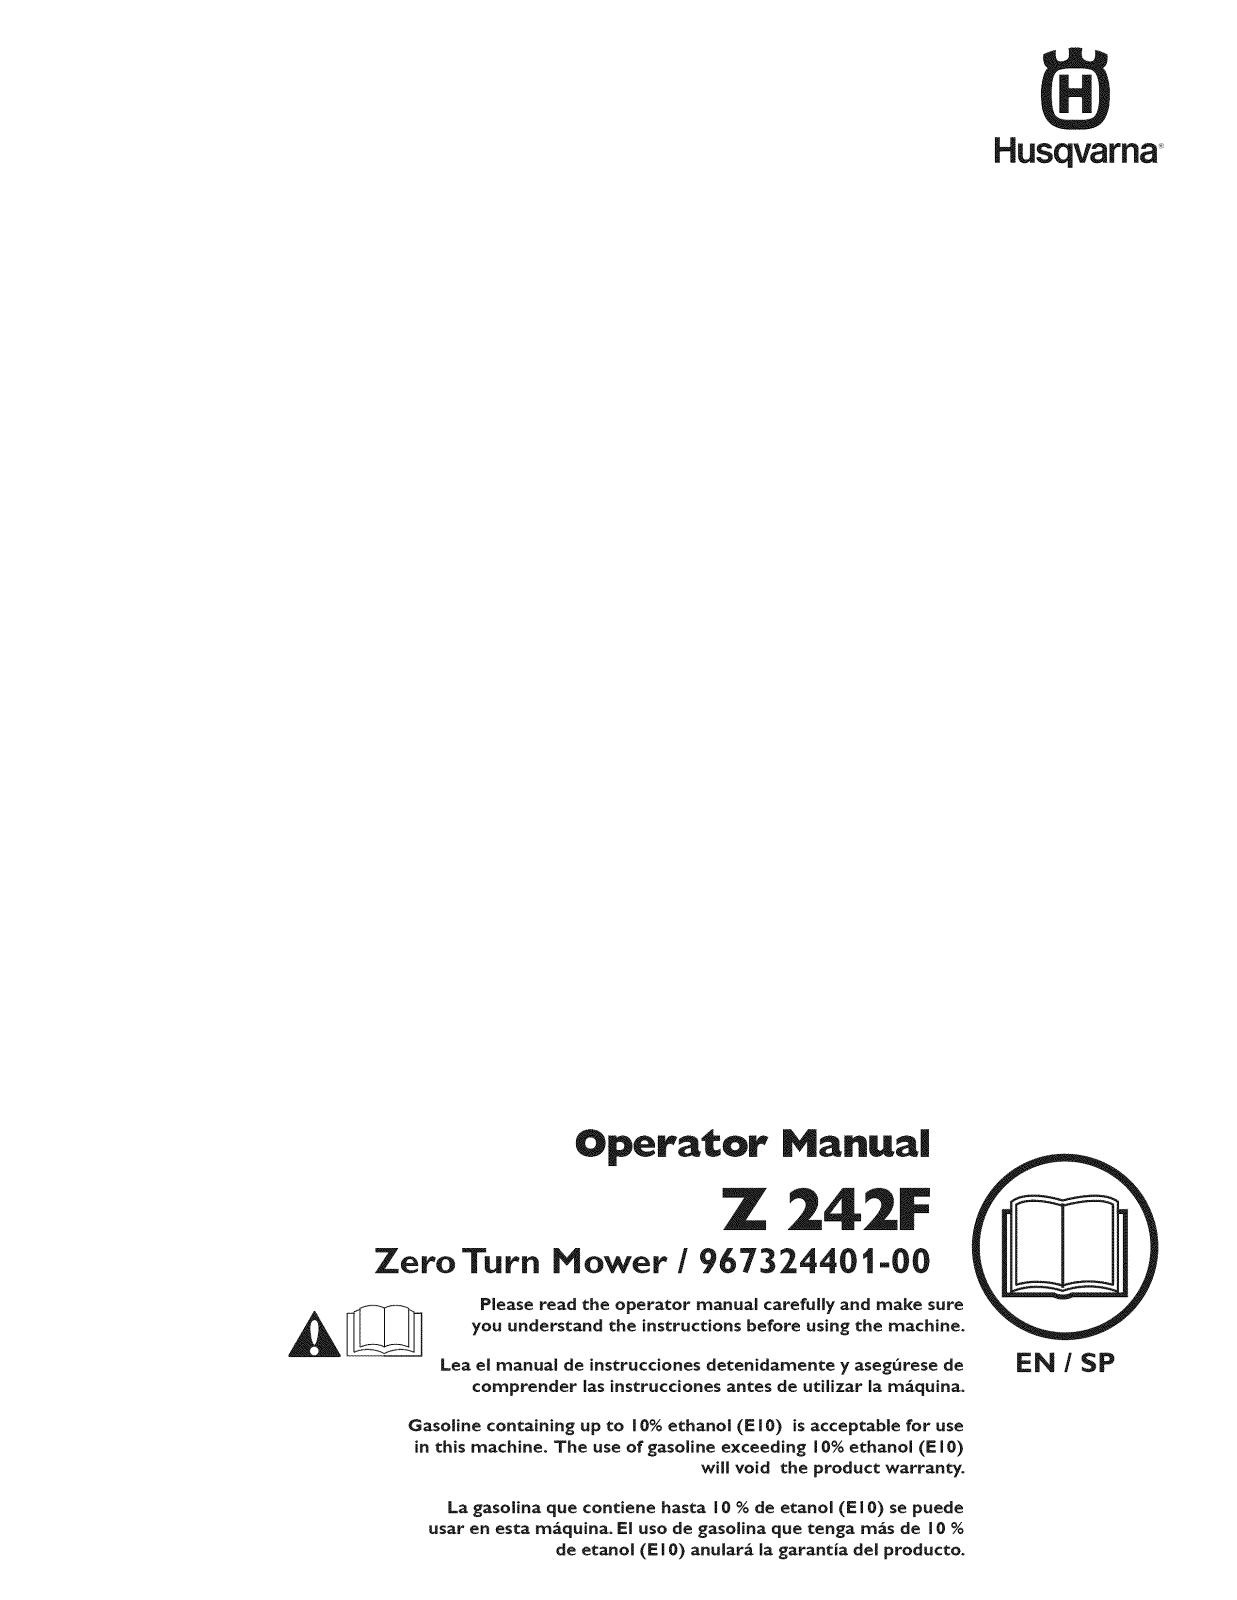 Husqvarna Z242F/967324401-00, 967324401-00 Owner’s Manual